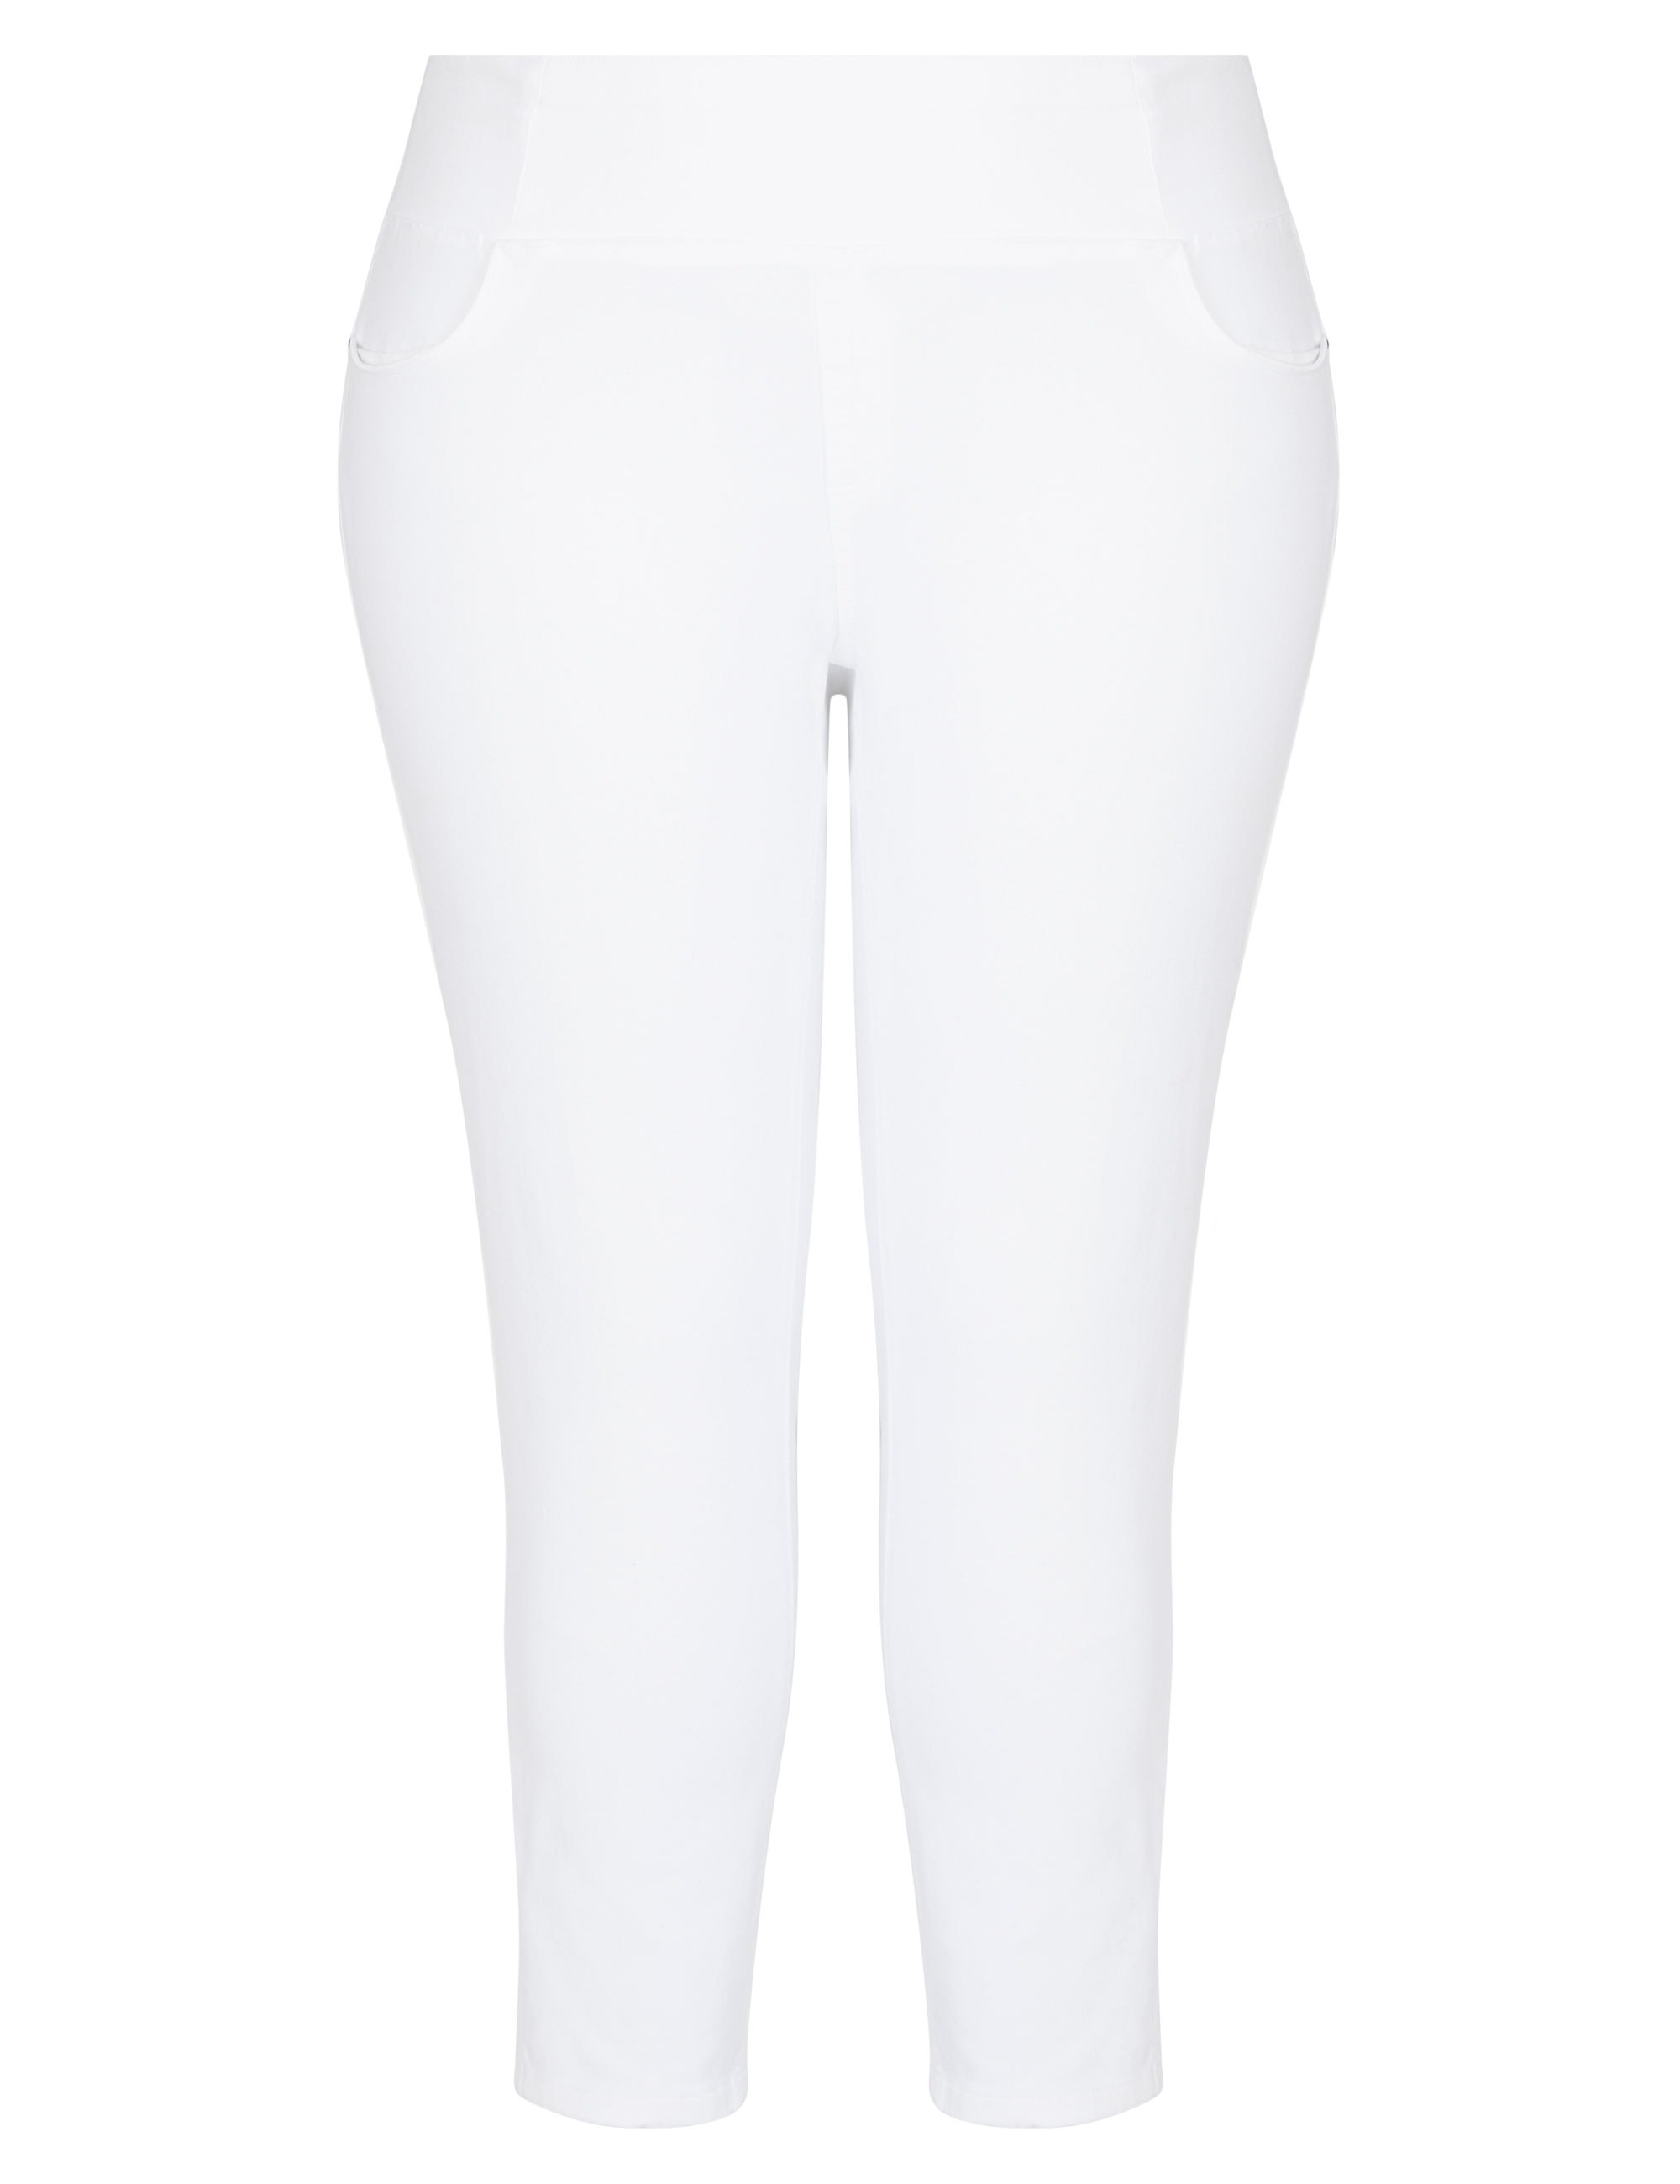 US 22 AUTOGRAPH - Plus Size - Womens Jeans - White Jeggings - Denim 